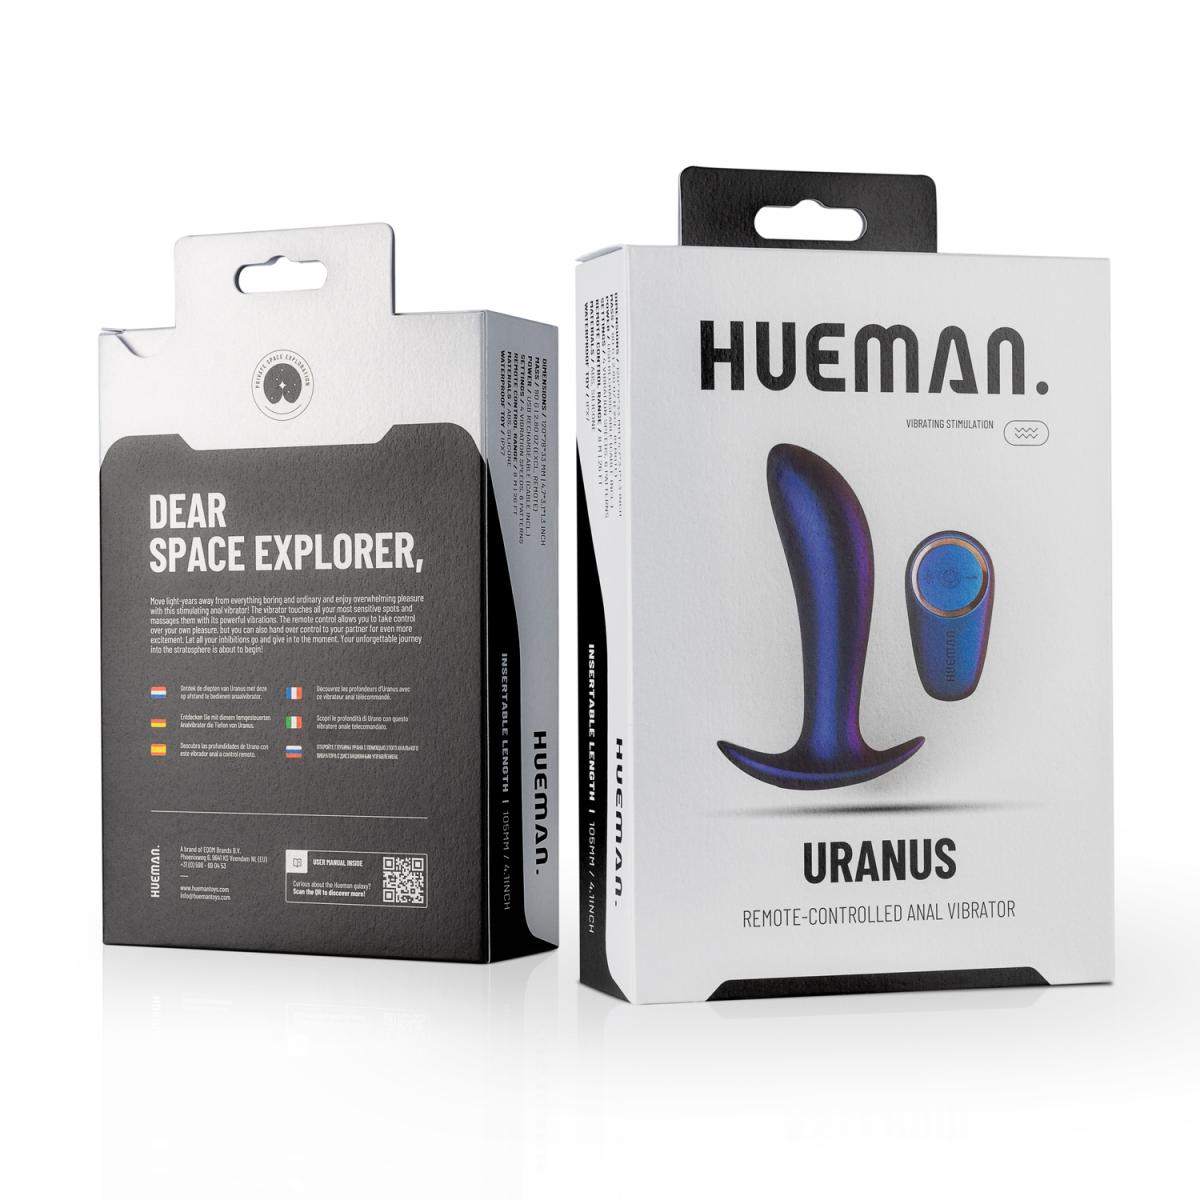 Luxe stijlvolle prostaat vibrator van het merk Hueman. De vibrator is gemaakt van zachte siliconen. Hueman koop je bij Flavourez